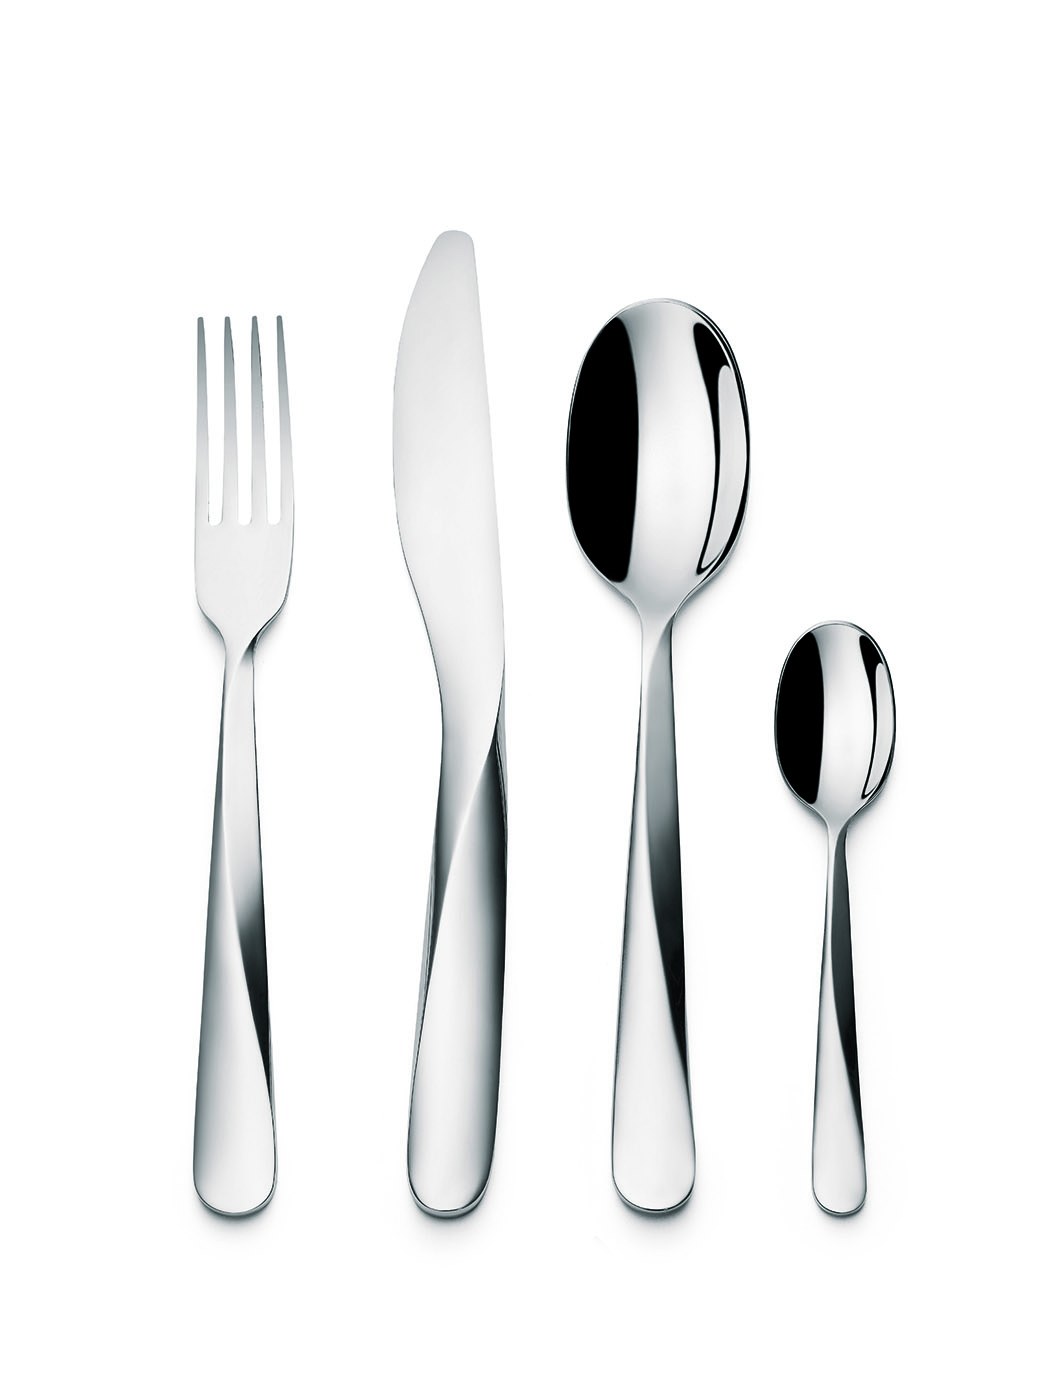 A Twist on Cutlery - Yanko Design